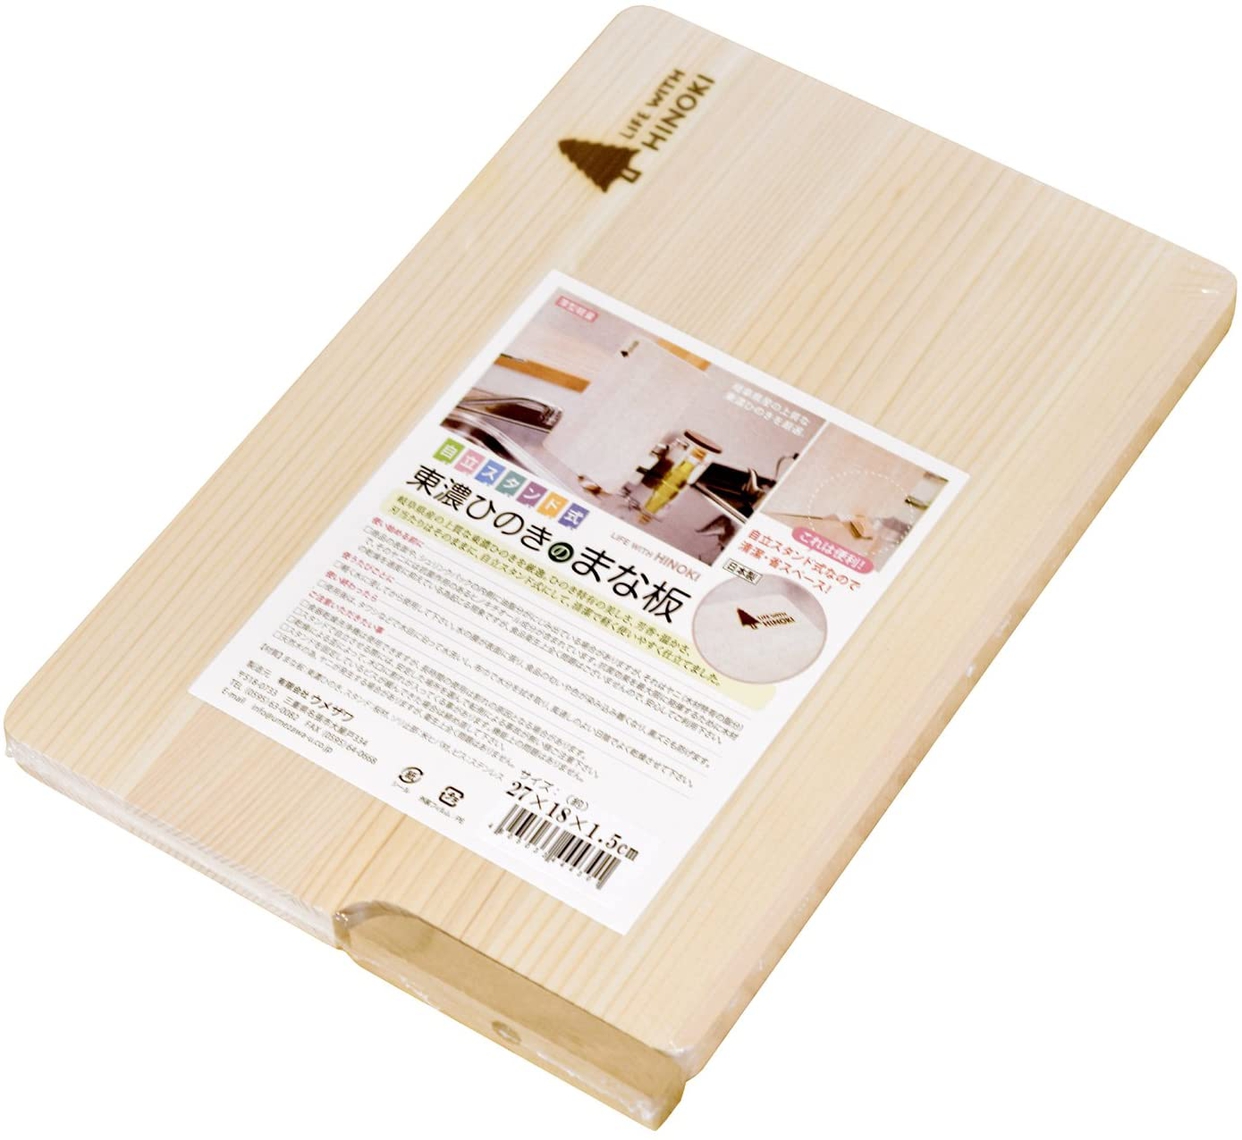 梅沢木材工芸社 東濃ひのきのまな板の商品画像1 